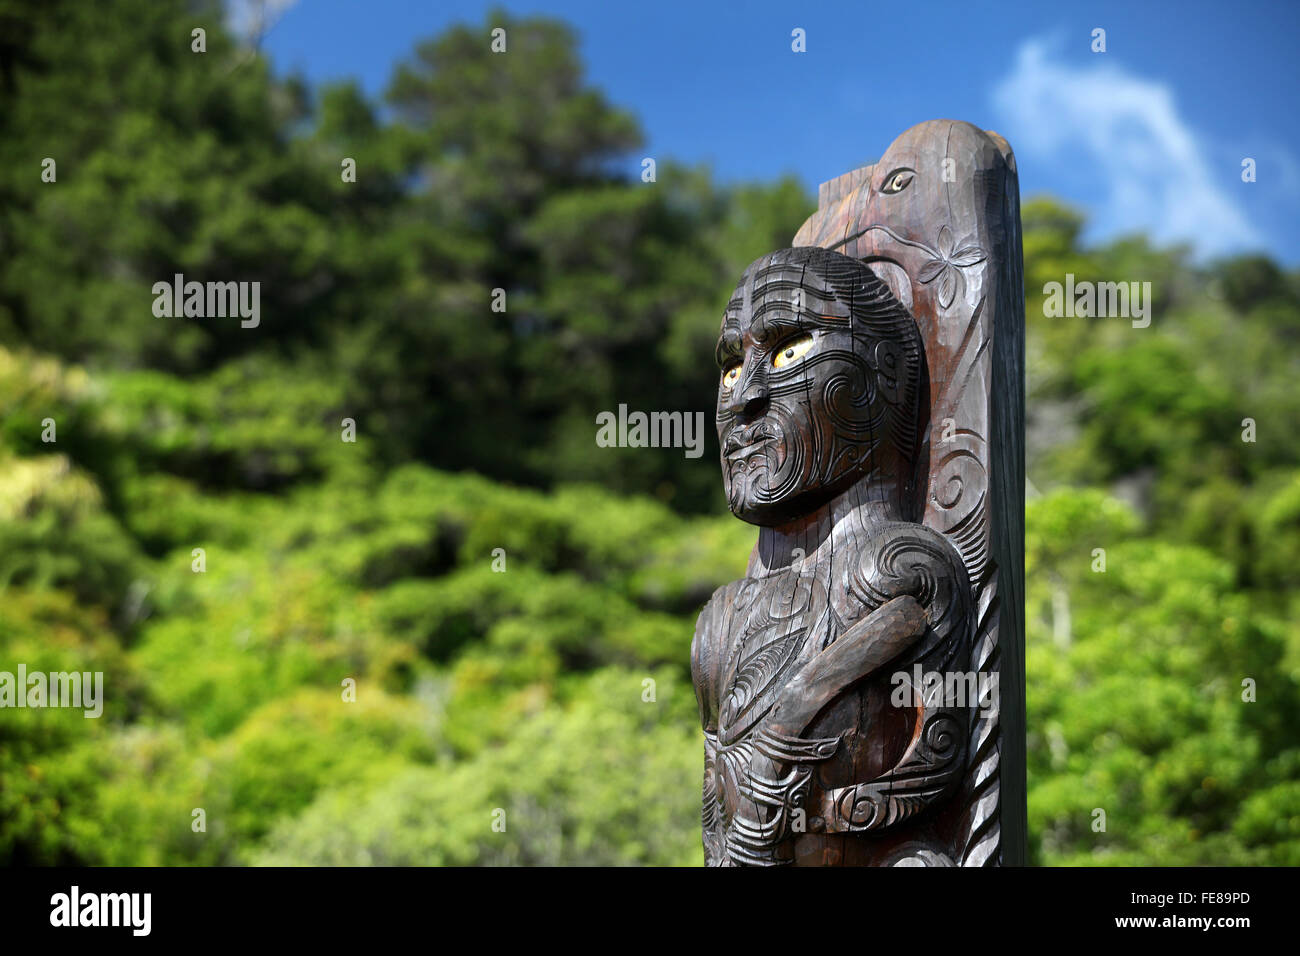 Sculpture de Koupé, le grand explorateur Polynésien, à Ship Cove, James Cook, base favorite au cours de ses trois voyages en Nouvelle-Zélande, Marlborough, Nouvelle-Zélande. Banque D'Images